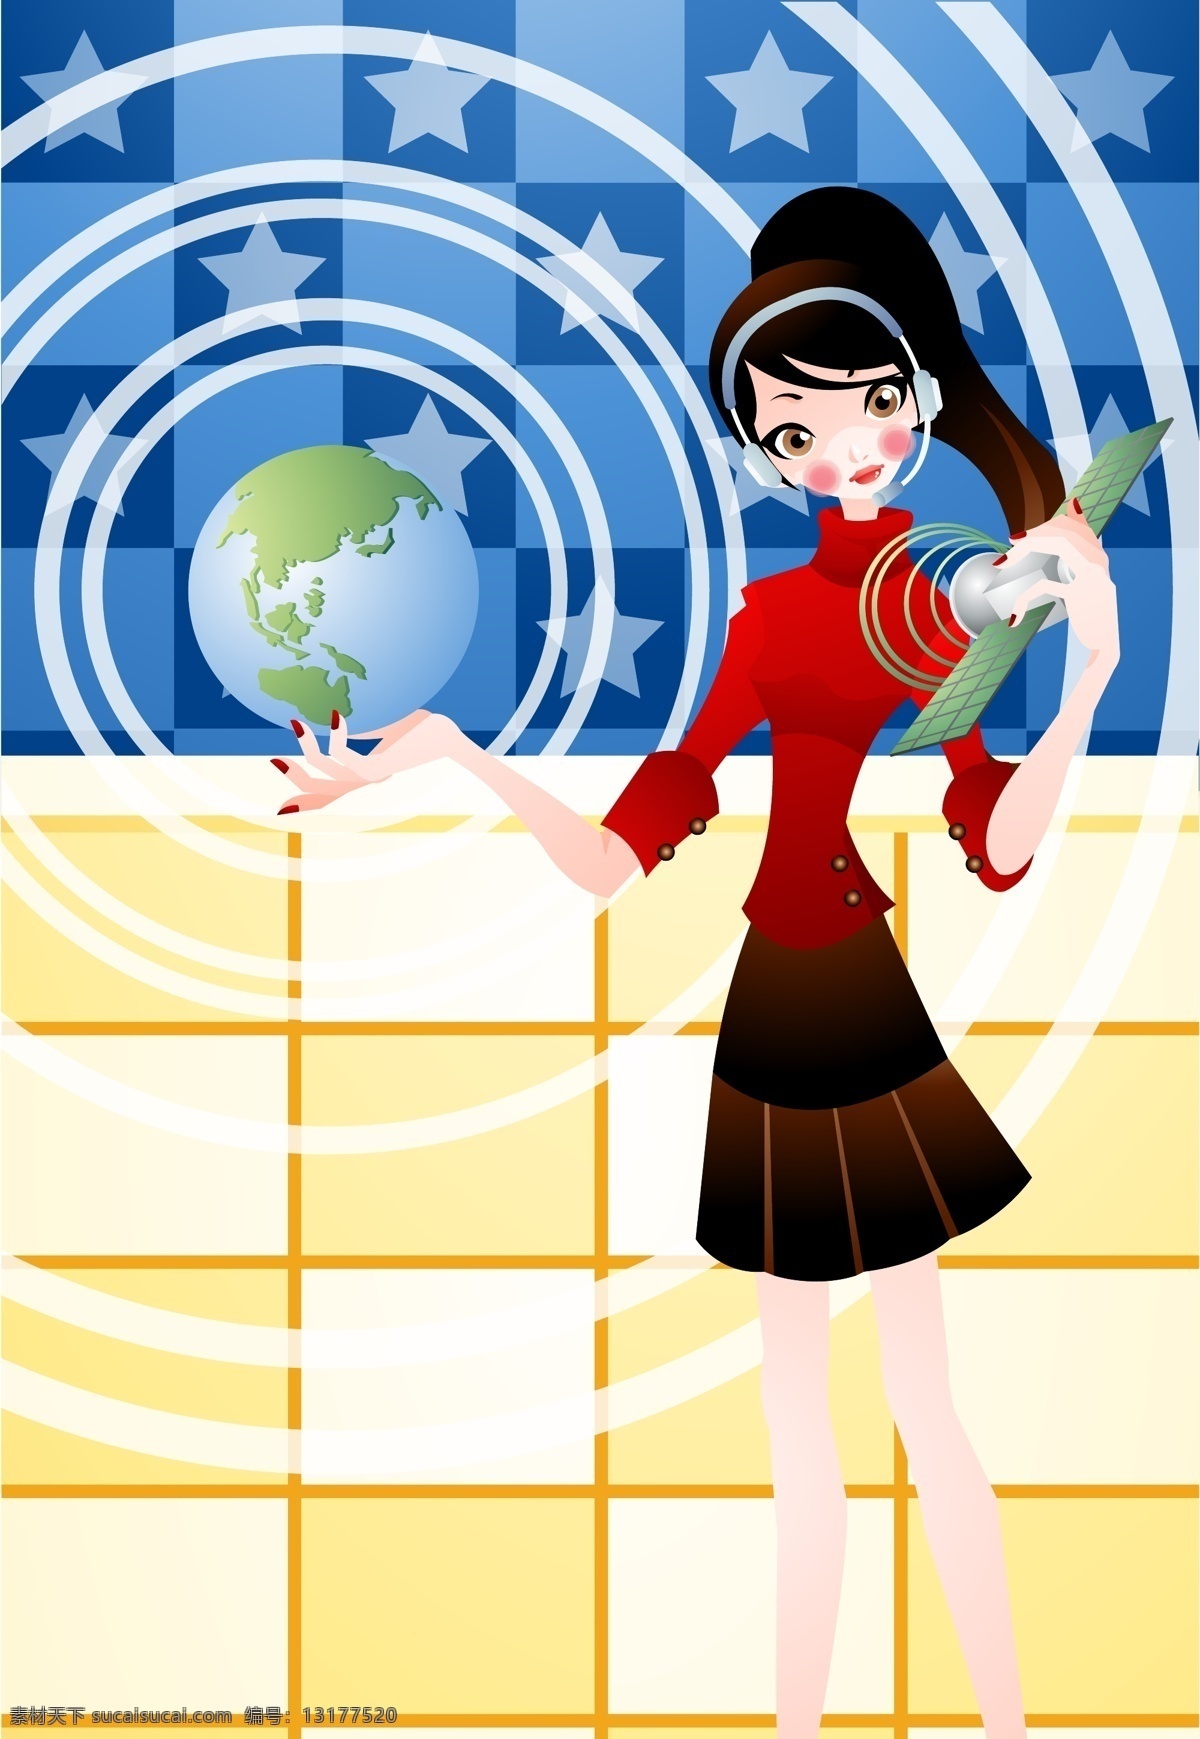 女孩 底 图 插画 背景图 地球 商务 矢量图 圆形线条 其他矢量图